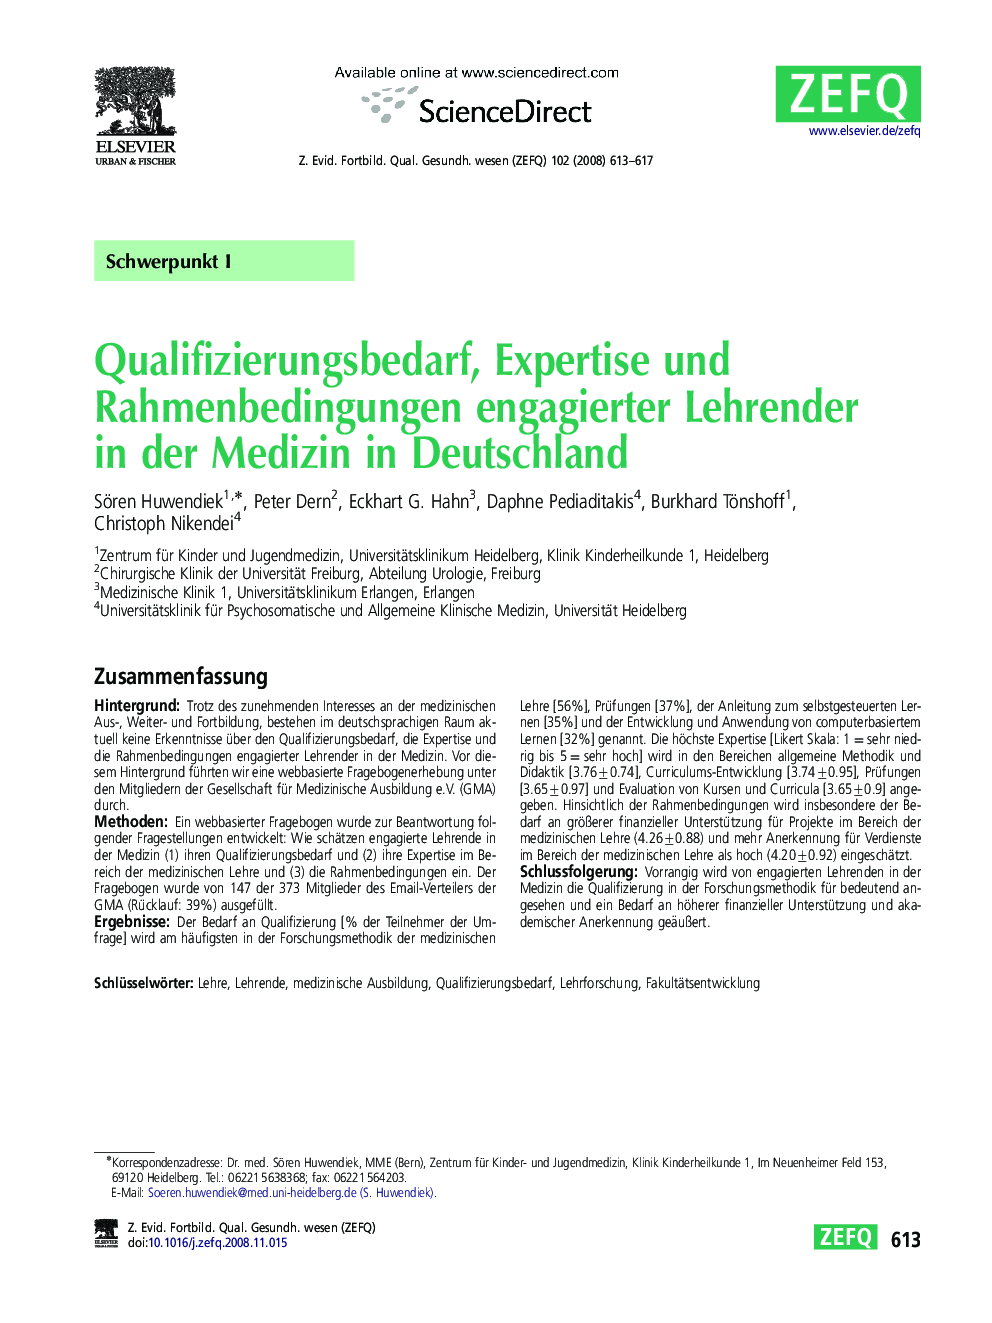 Qualifizierungsbedarf, Expertise und Rahmenbedingungen engagierter Lehrender in der Medizin in Deutschland